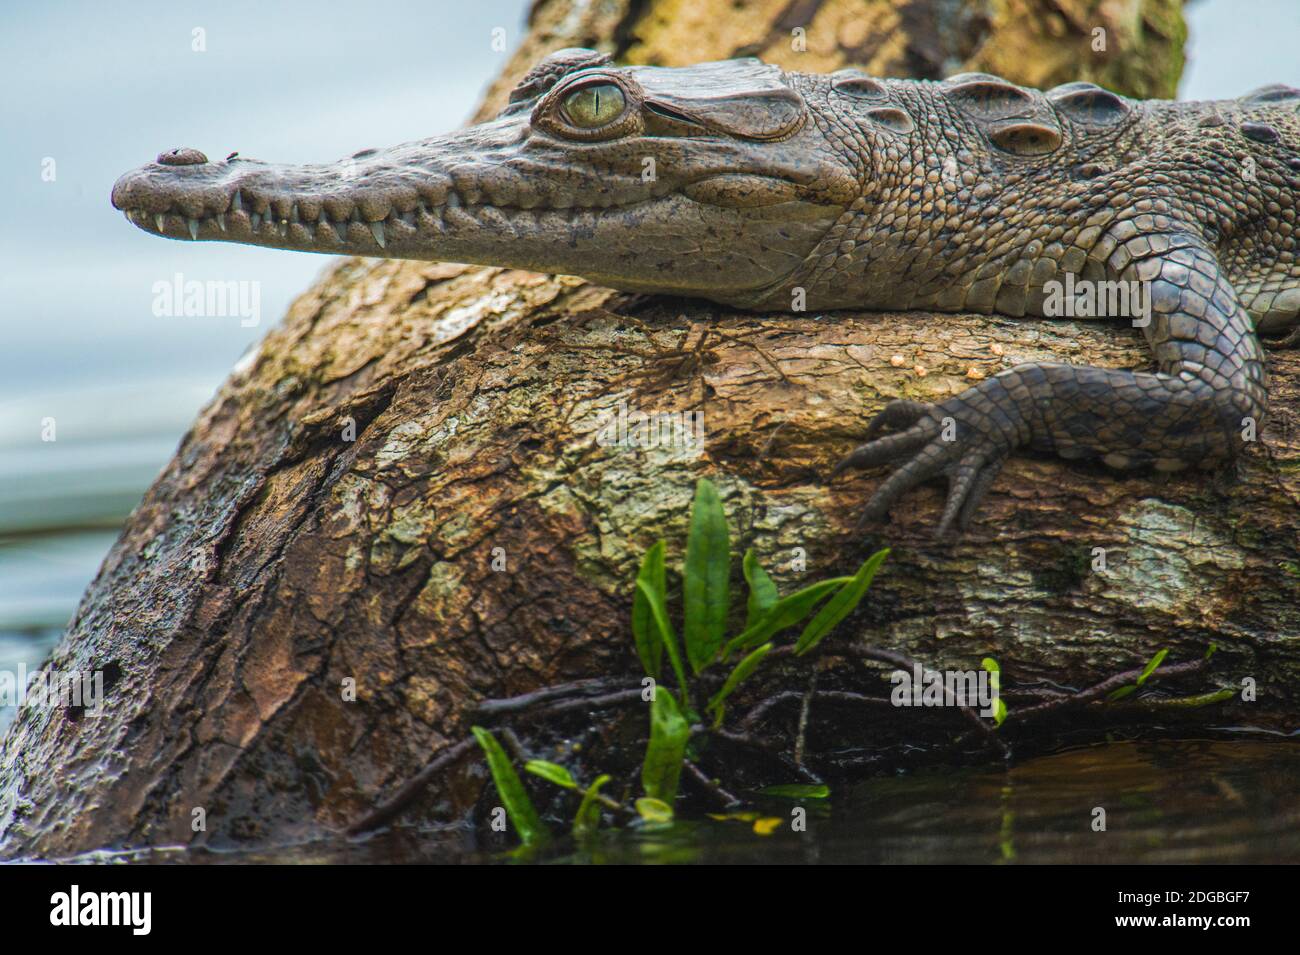 Cocodrilo americano (Crocodylus acutus) en el árbol, Tortuguero, Costa Rica Foto de stock